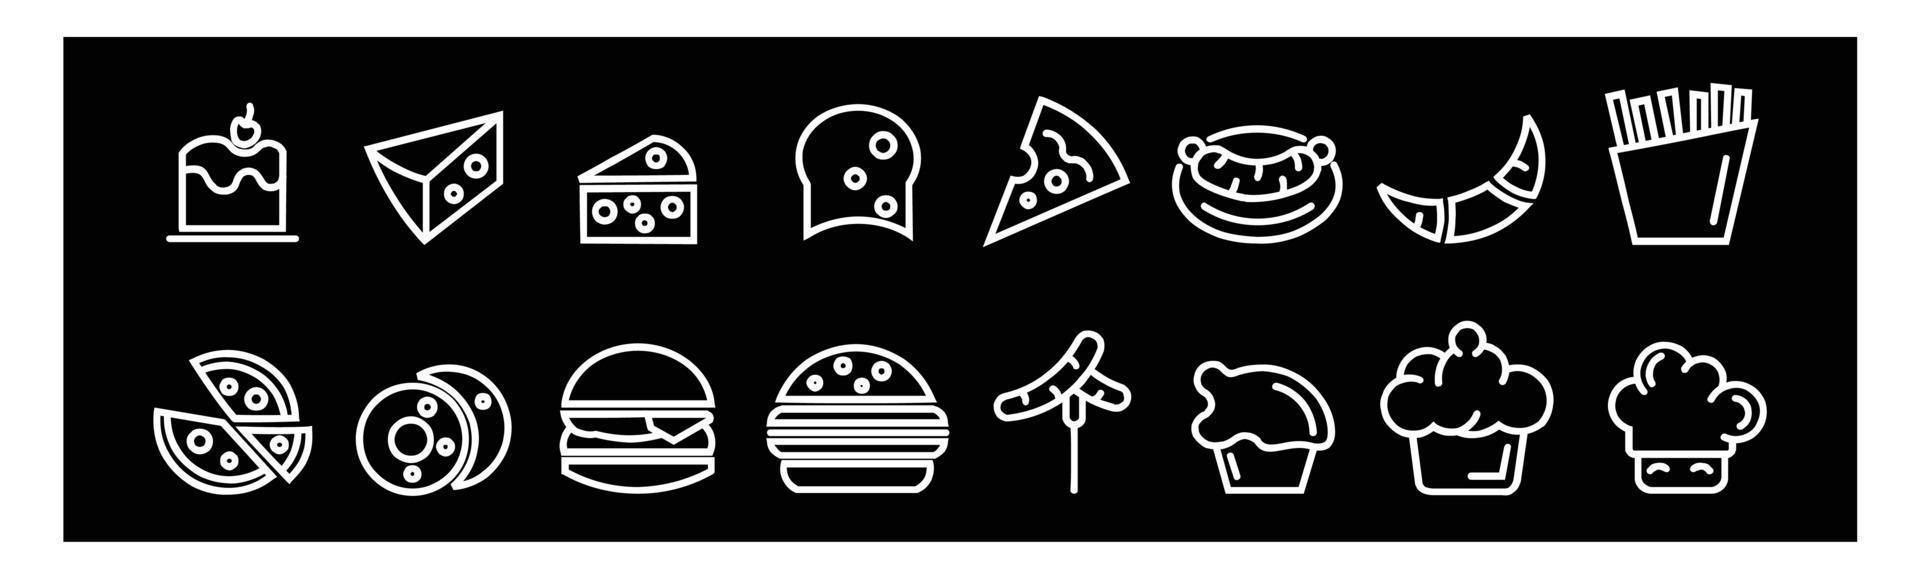 conjunto de iconos de logotipo plano de comida y bebida, menú de restaurante iconos saludables para el diseño sobre fondo negro. vector